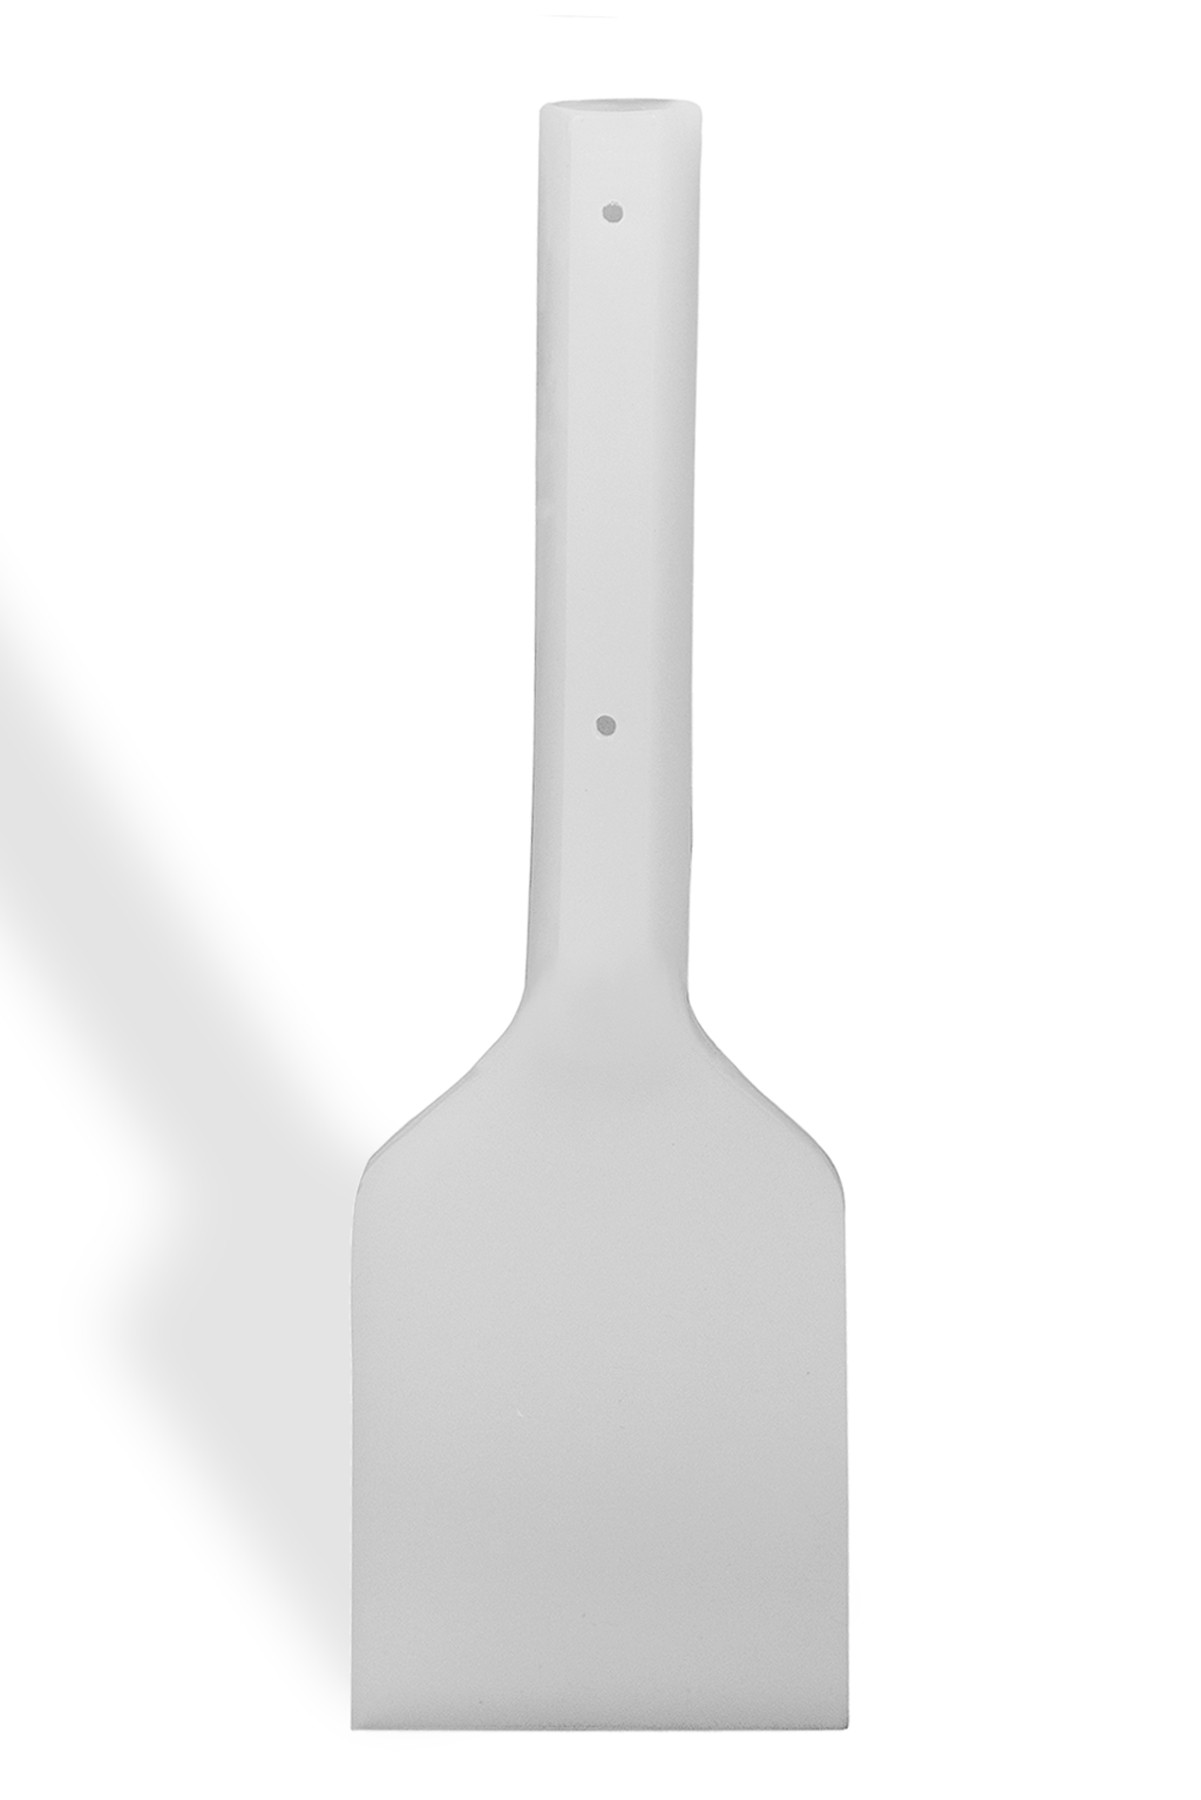 SP Bel-Art Soft Plastic Scraper; 10 in. Handle, 5 x 6 in. Blade, White